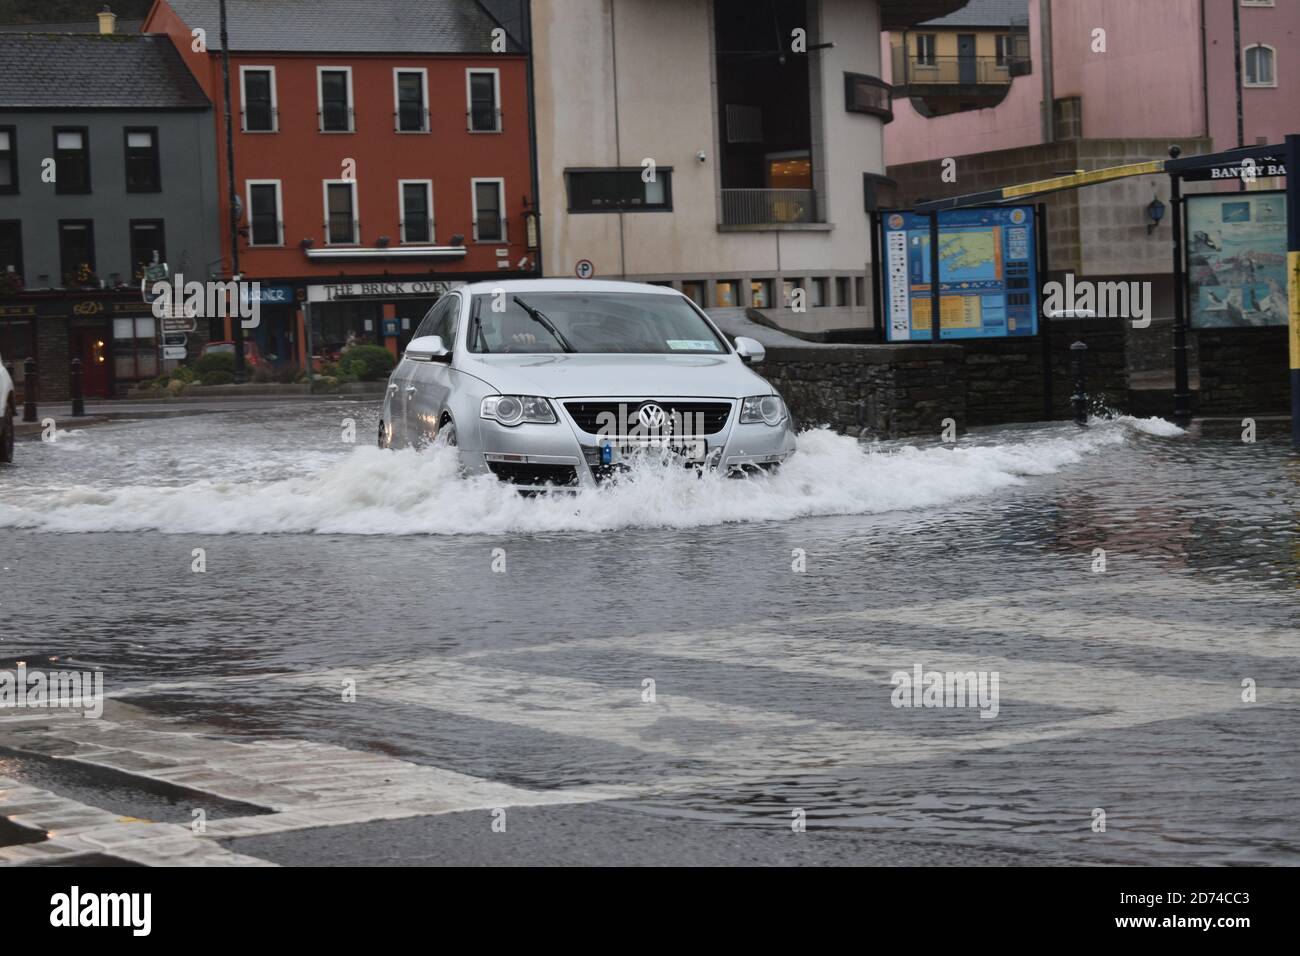 Voiture traversant les eaux inondées de Wolfe Tone Square. Bantry, Co Cork. Irlande. Banque D'Images